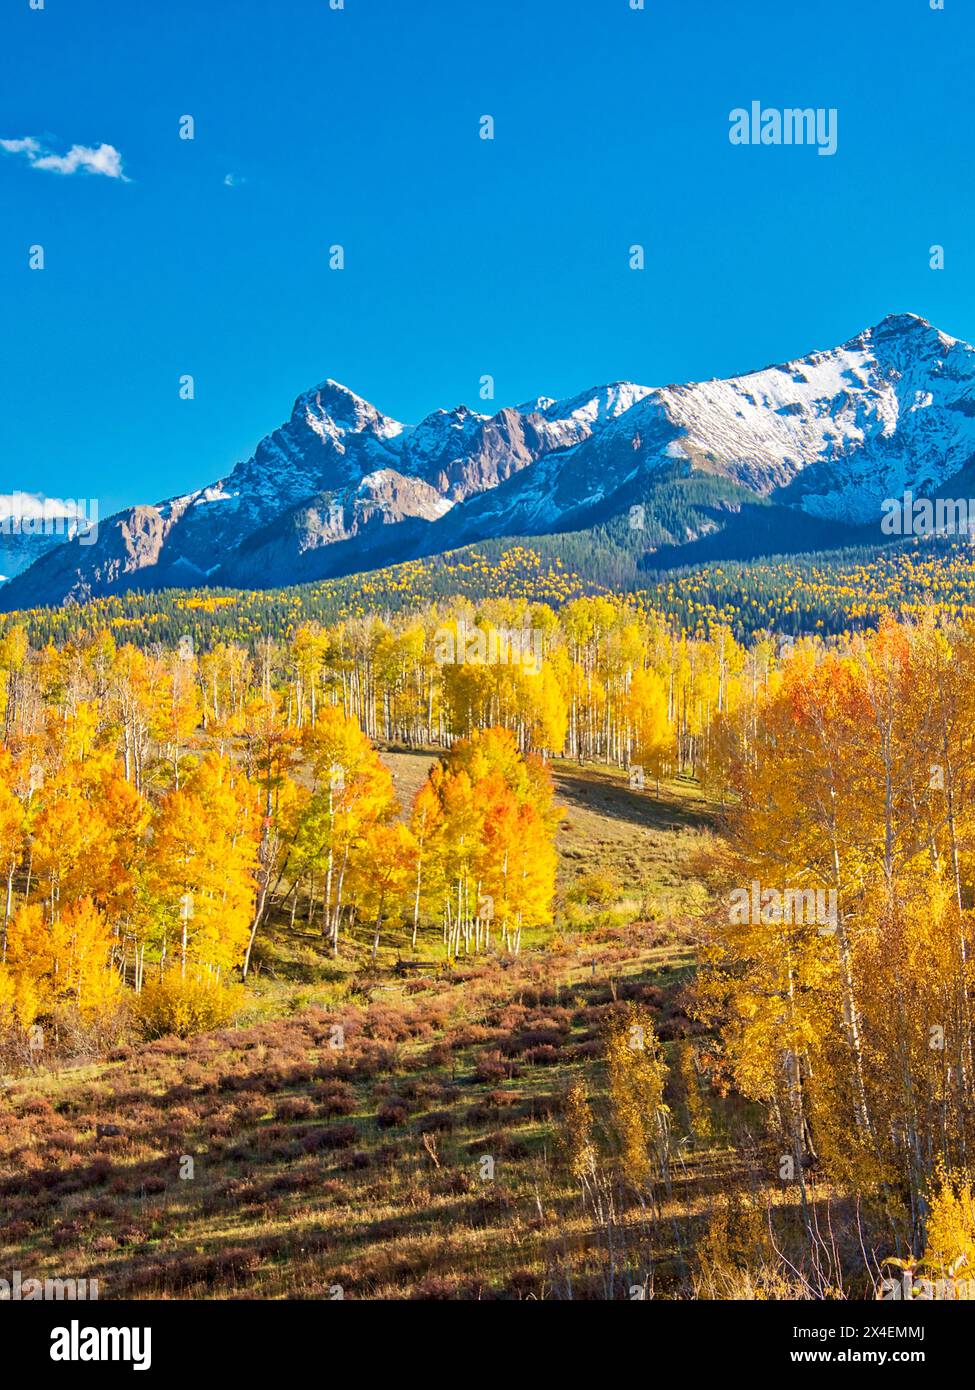 États-Unis, Colorado, Quray. Dallas Divide, lever du soleil sur le Mt. Snaffles avec des couleurs d'automne Banque D'Images